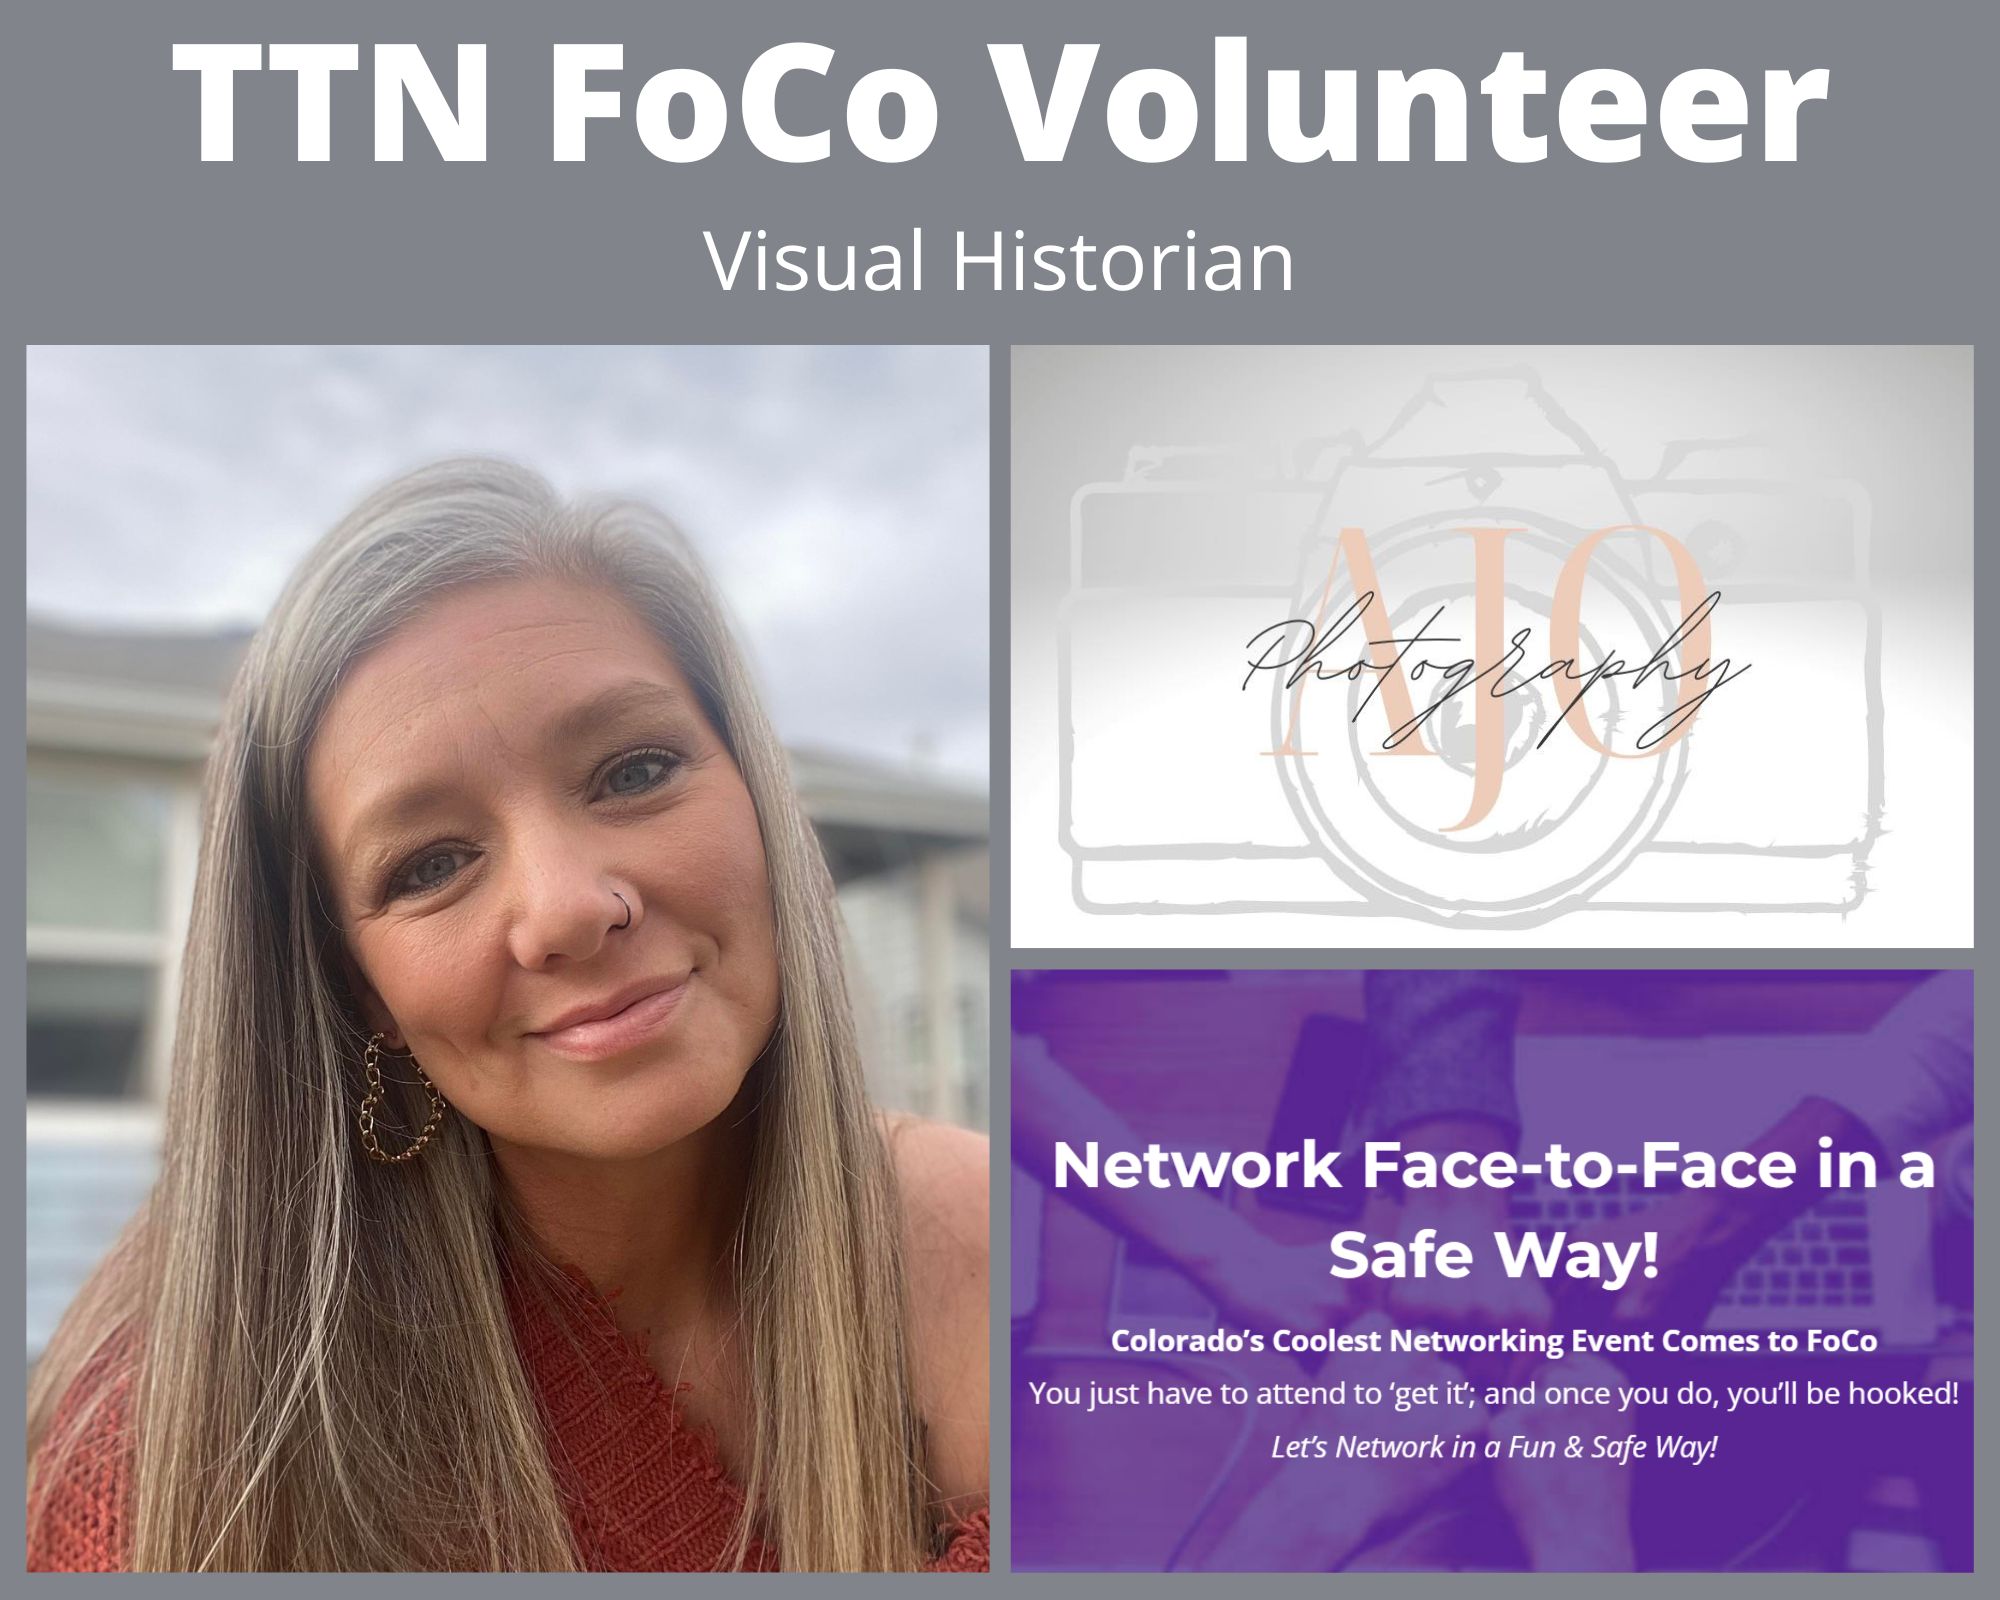 TTN FoCo Volunteer Oct22 - Amber Jo Osburne - Visual Historian